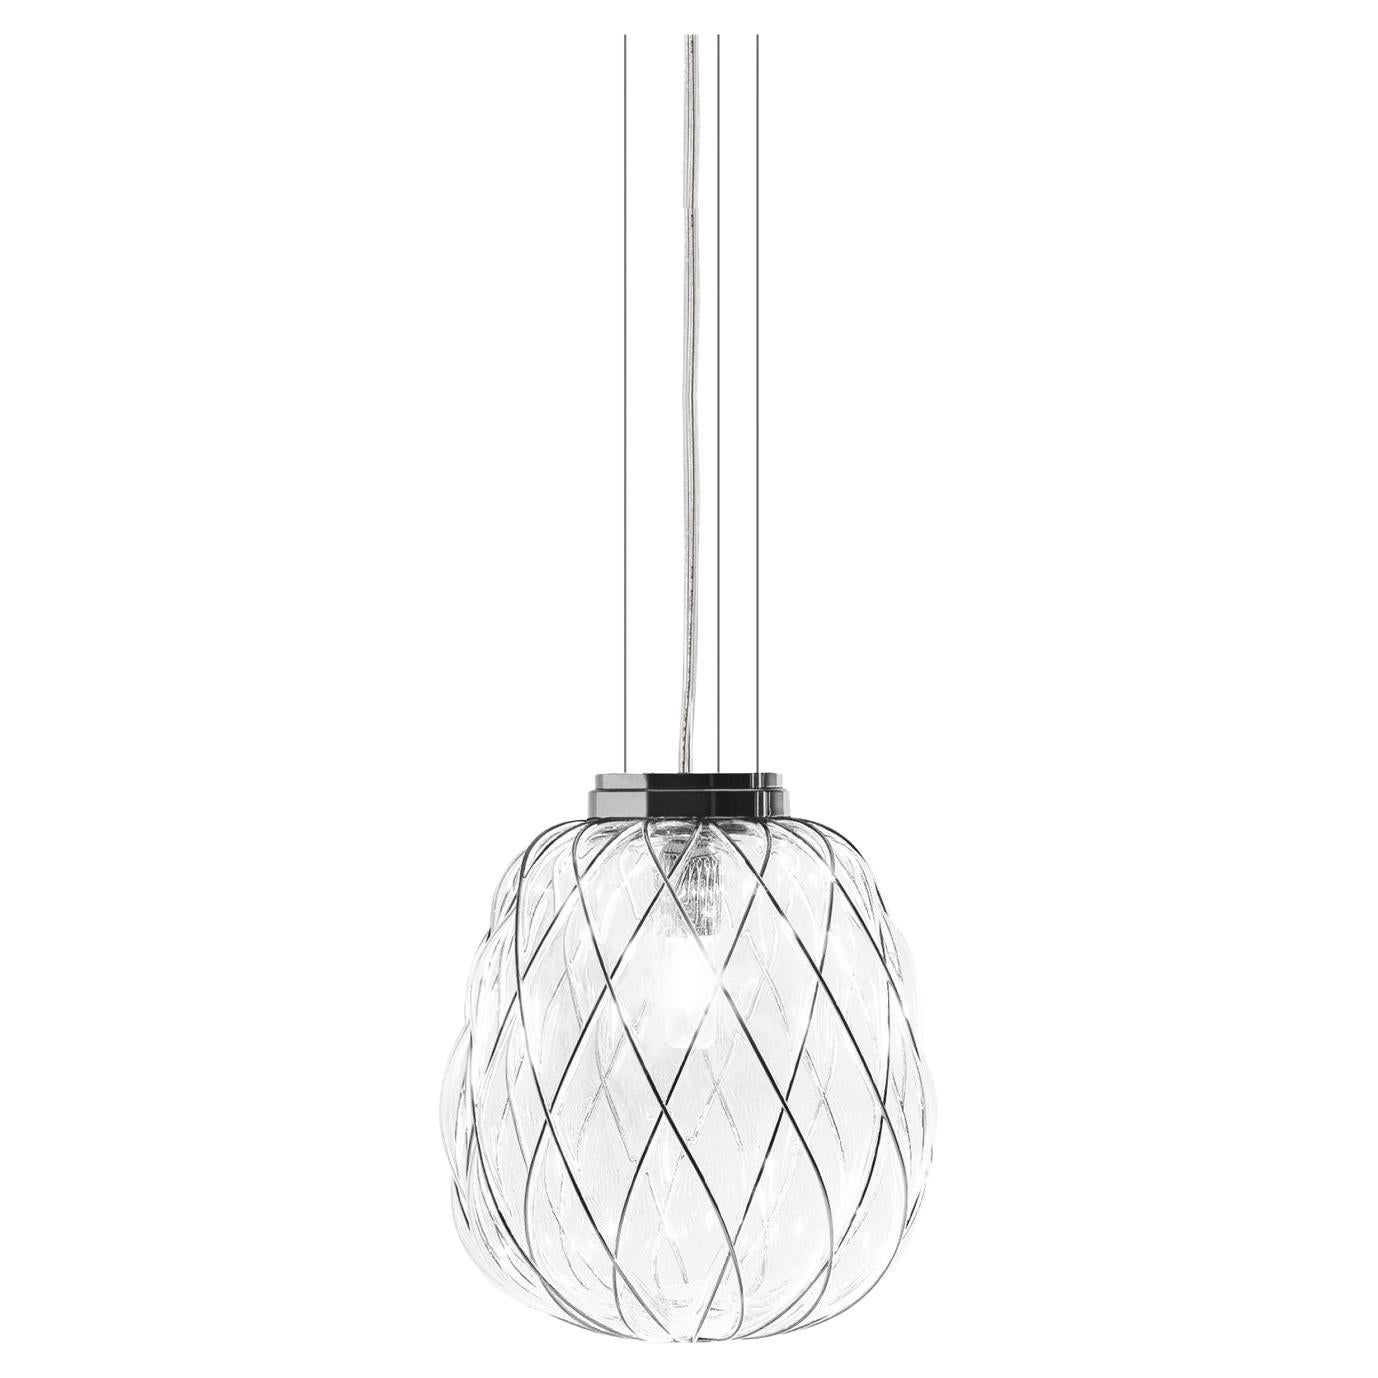 Lampe à suspension en verre soufflé « Pinecone » de Fontana Arte, conçue par Paola Navone